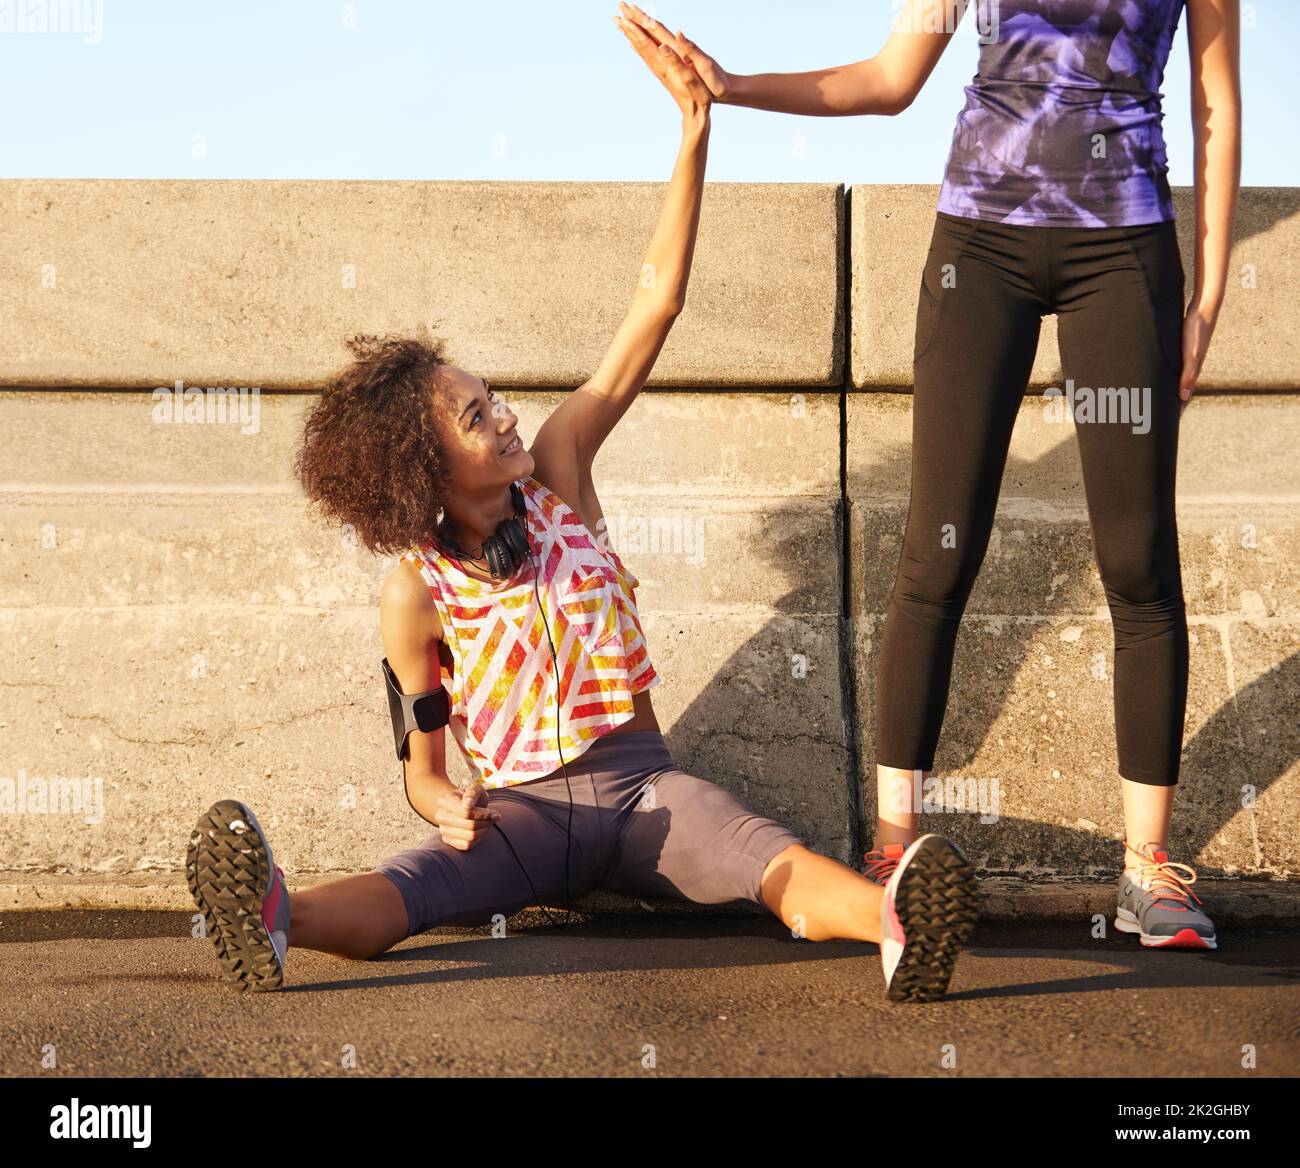 Entrambi abbiamo fatto stupendo. Shot di una jogger femminile seduta sulla strada e high-fiving suo partner in piedi. Foto Stock